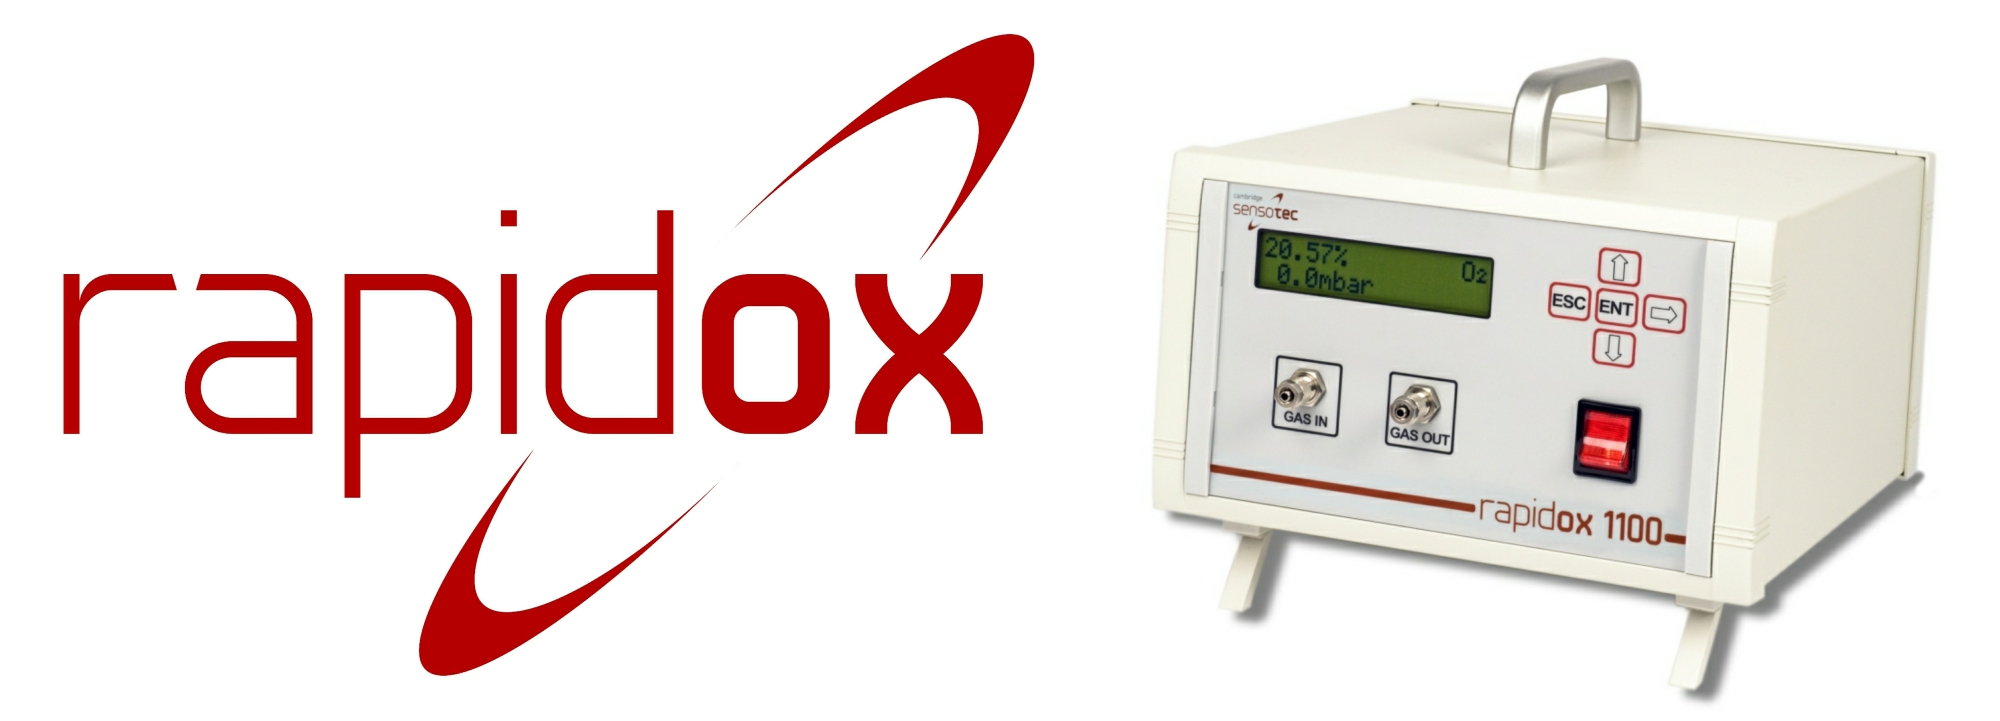 Rapidox 1100 Oxygen Gas Analyser